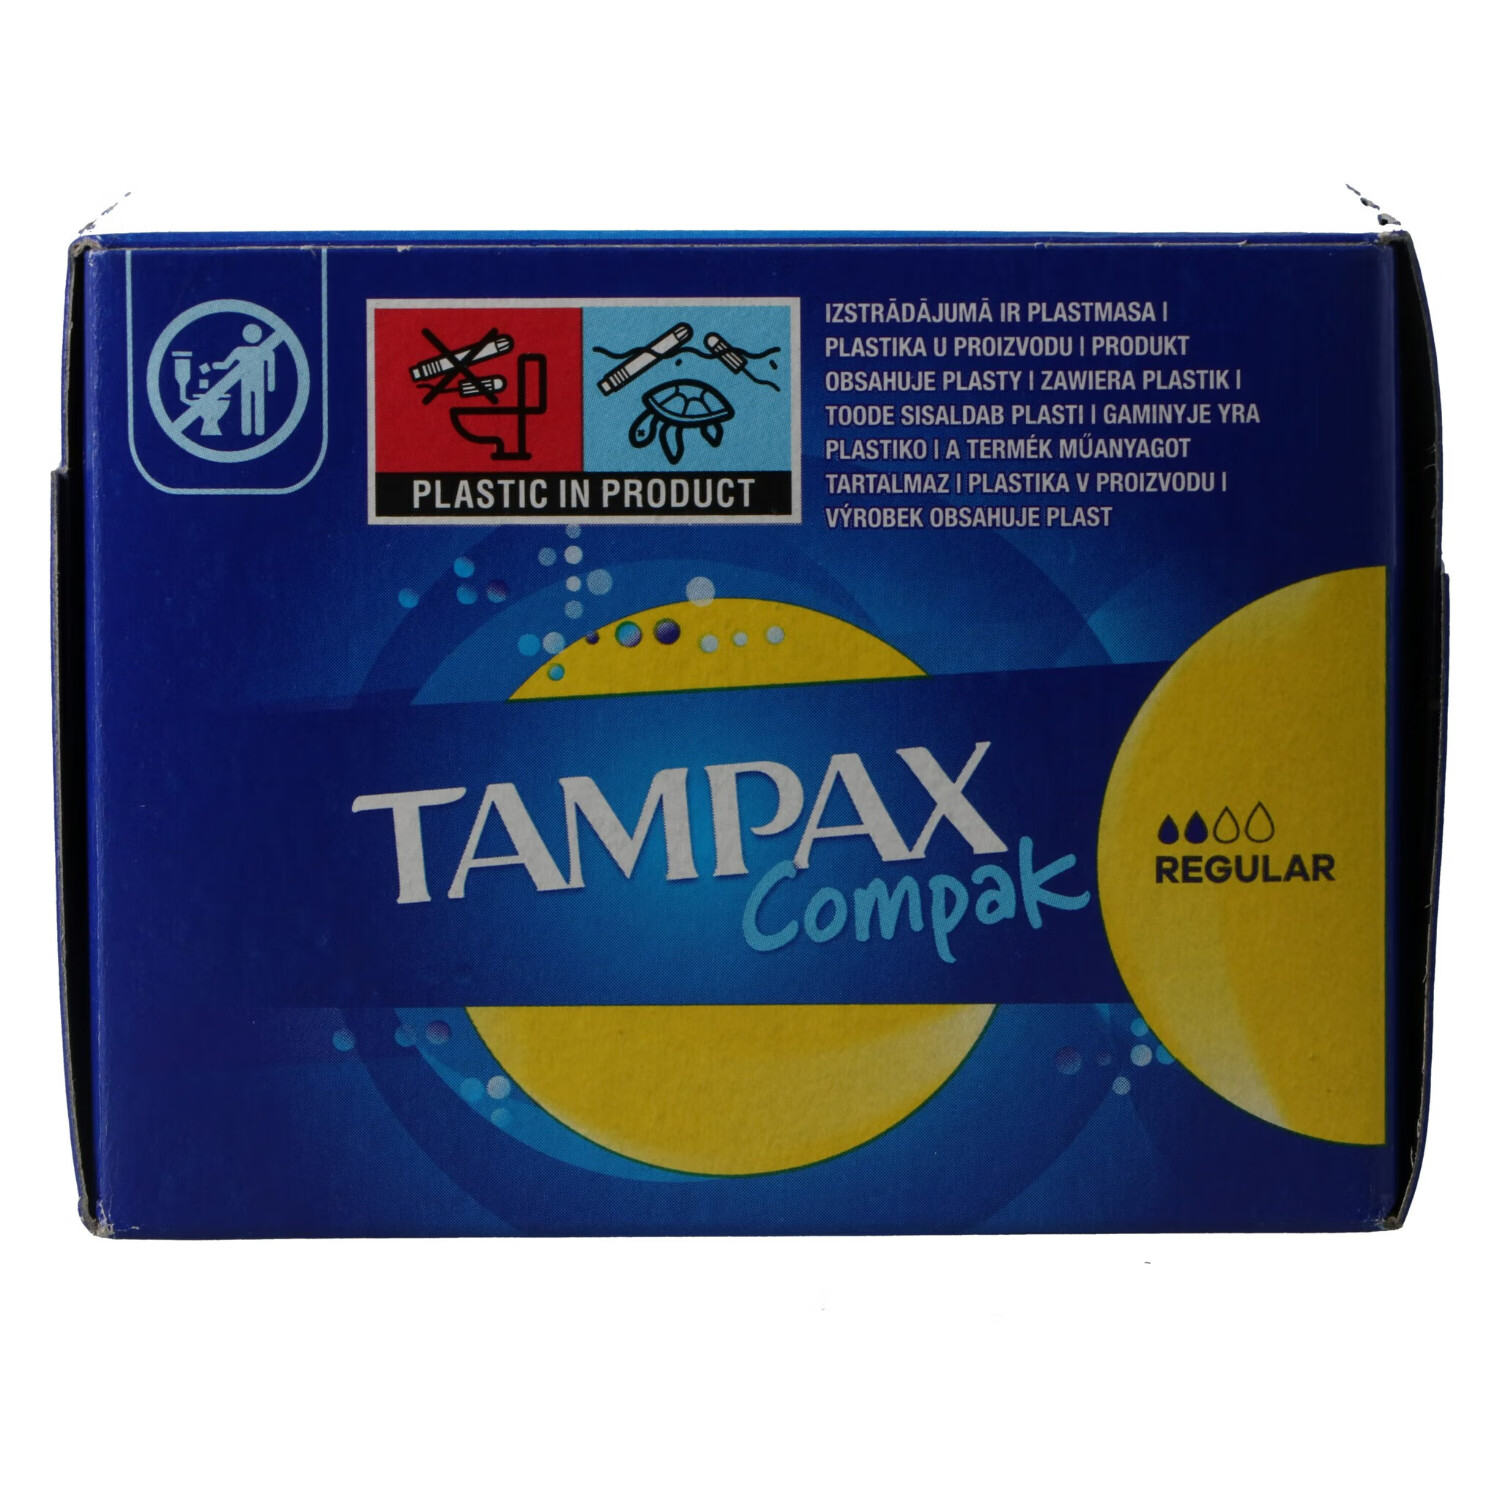 丹碧丝（TAMPAX）欧洲进口卫生棉条普通款16支/盒 17.91元